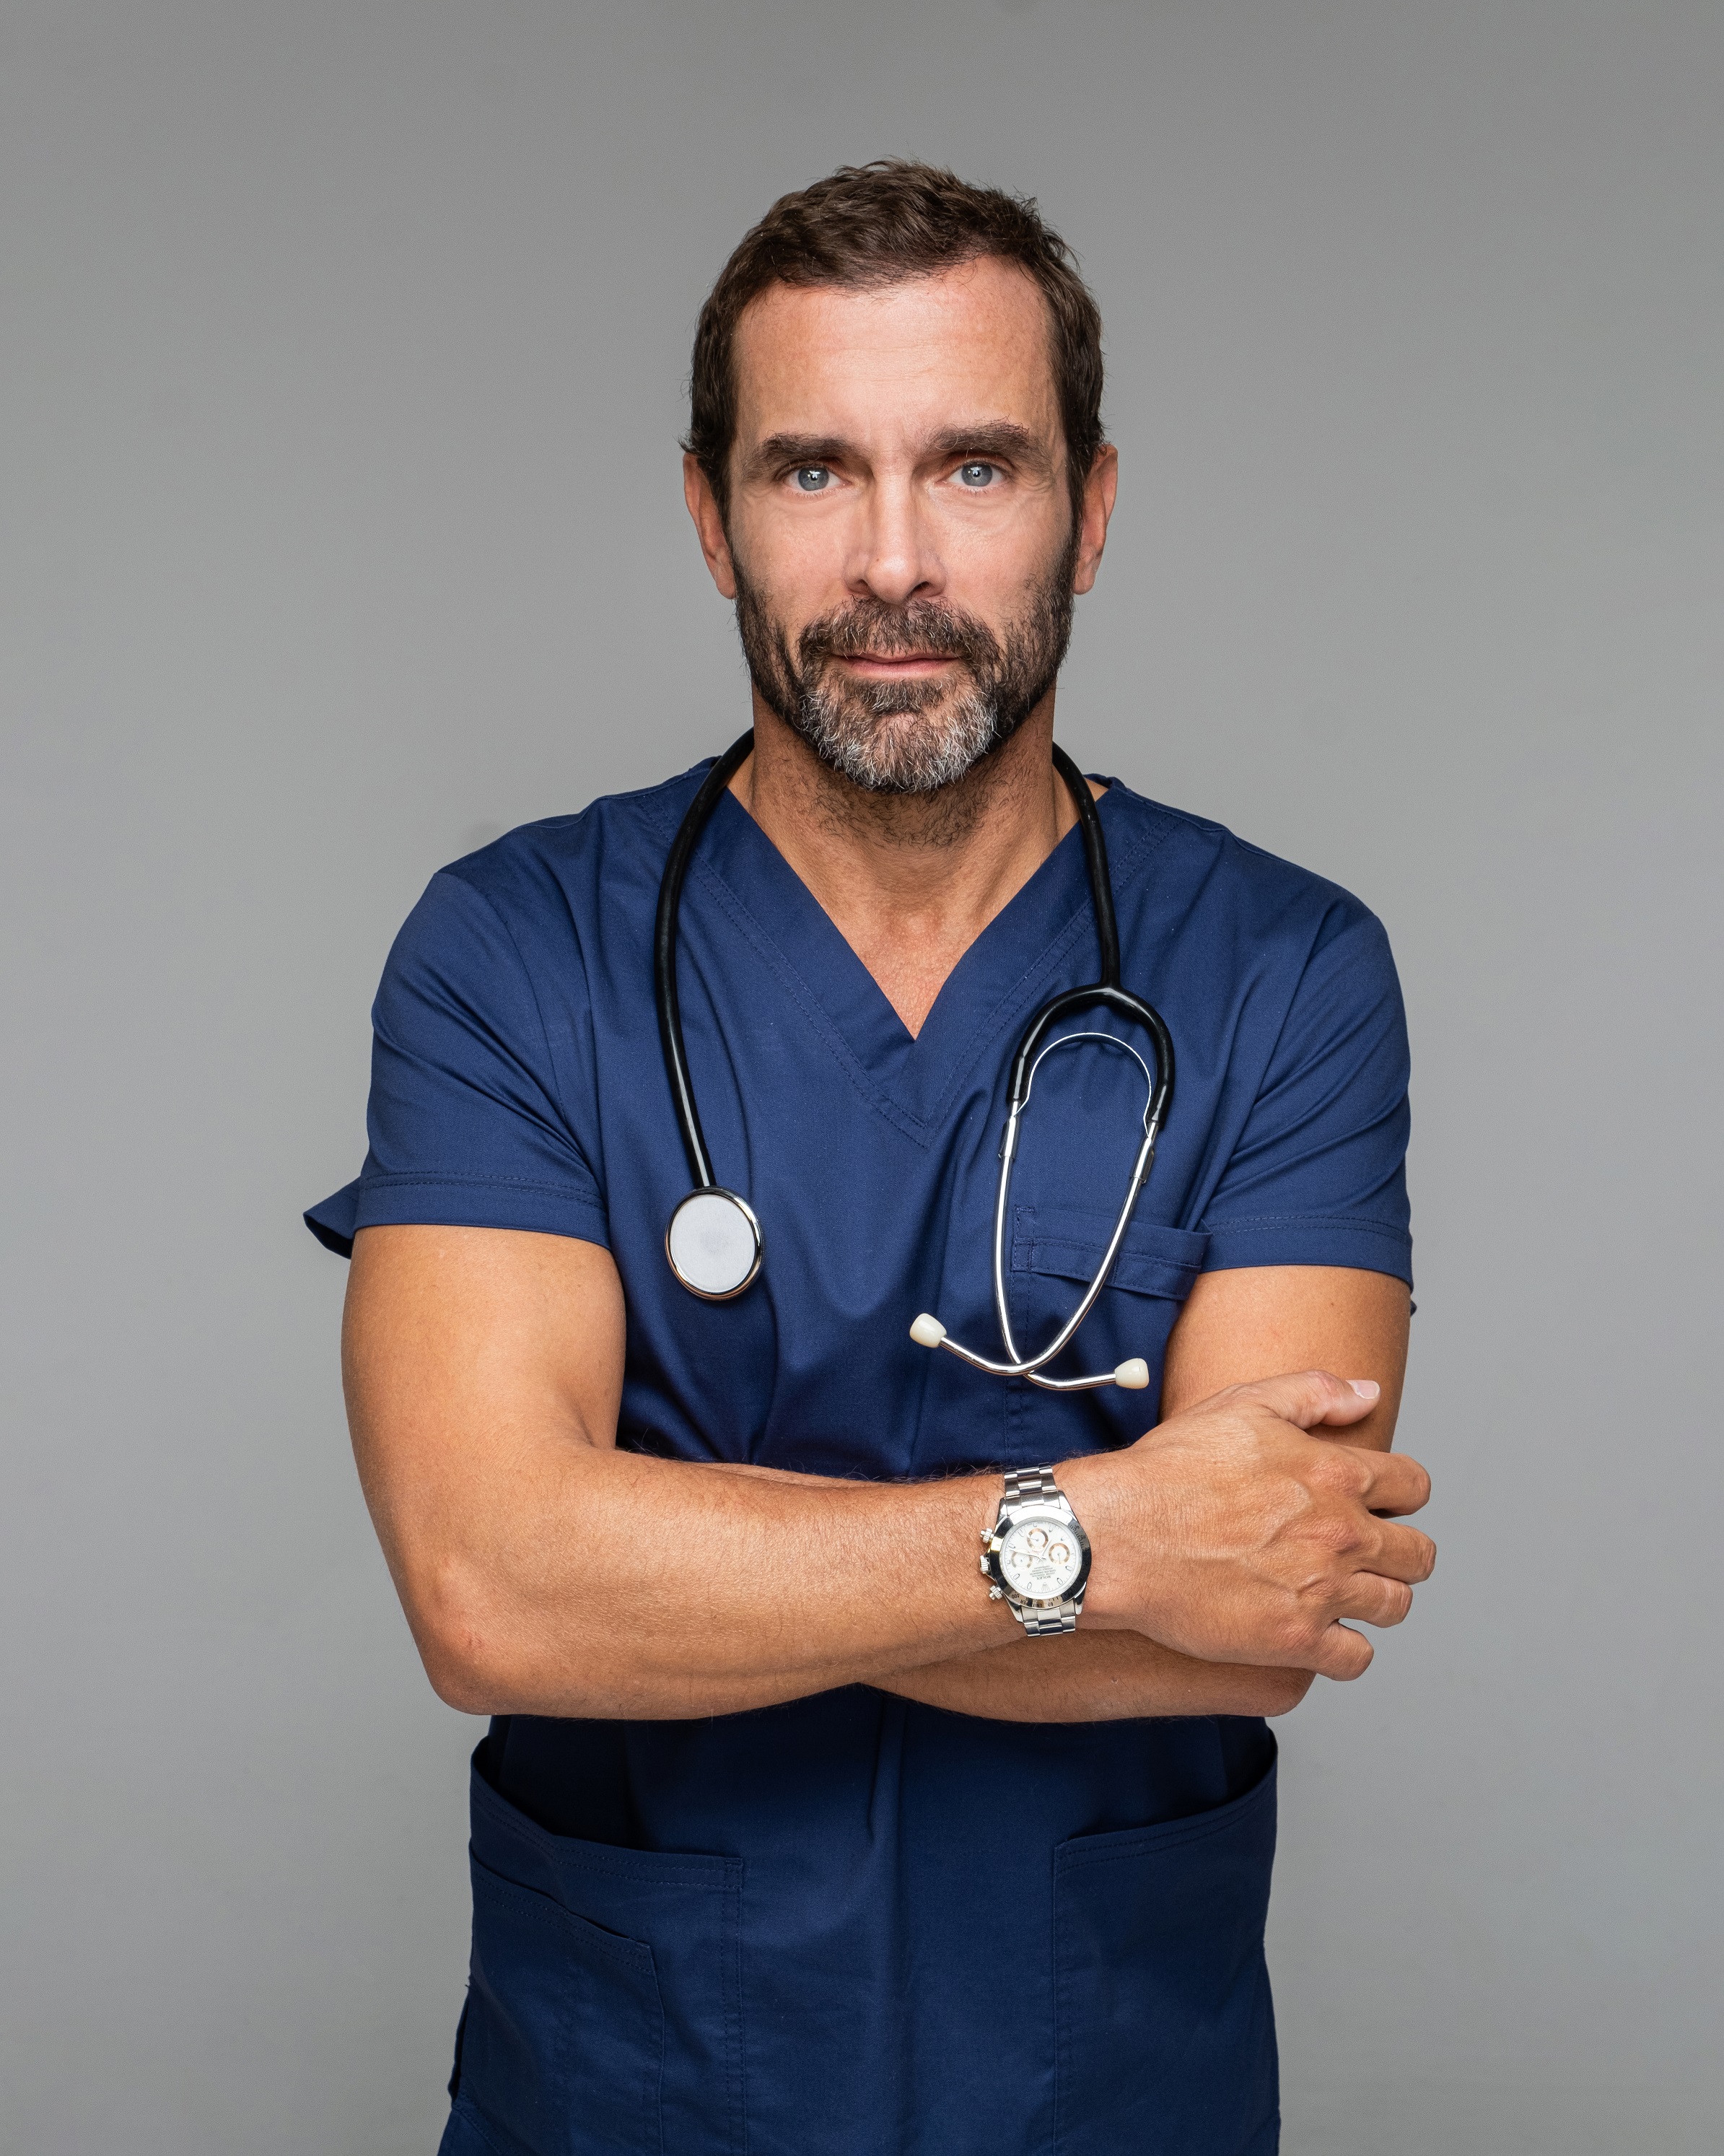 Κ.Μαρκουλάκης: «Ο Γιατρός» είναι ο πιο ενδιαφέρον ρόλος που έχω κάνει στην τηλεόραση